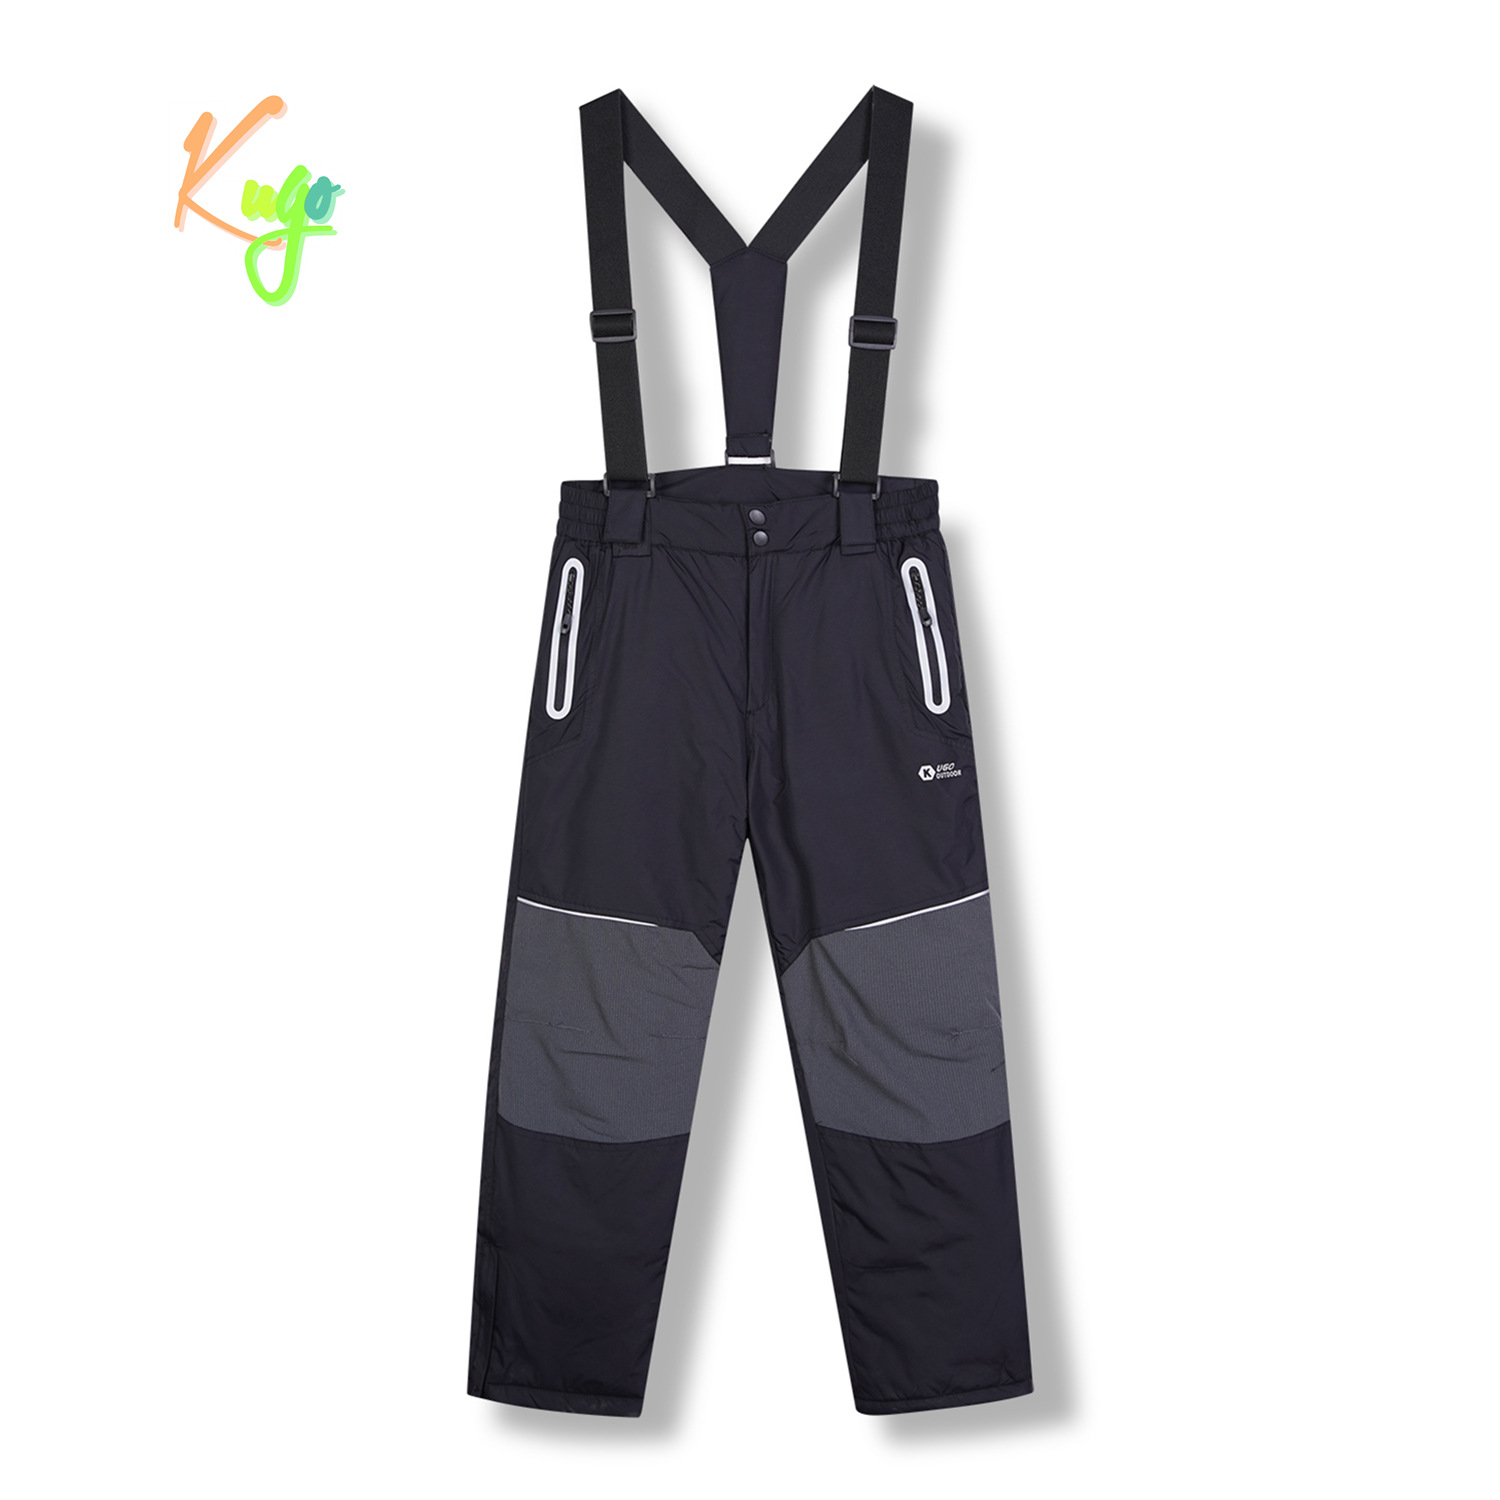 Chlapecké lyžařské kalhoty - KUGO DK8231, černá / černé zipy Barva: Černá, Velikost: 146